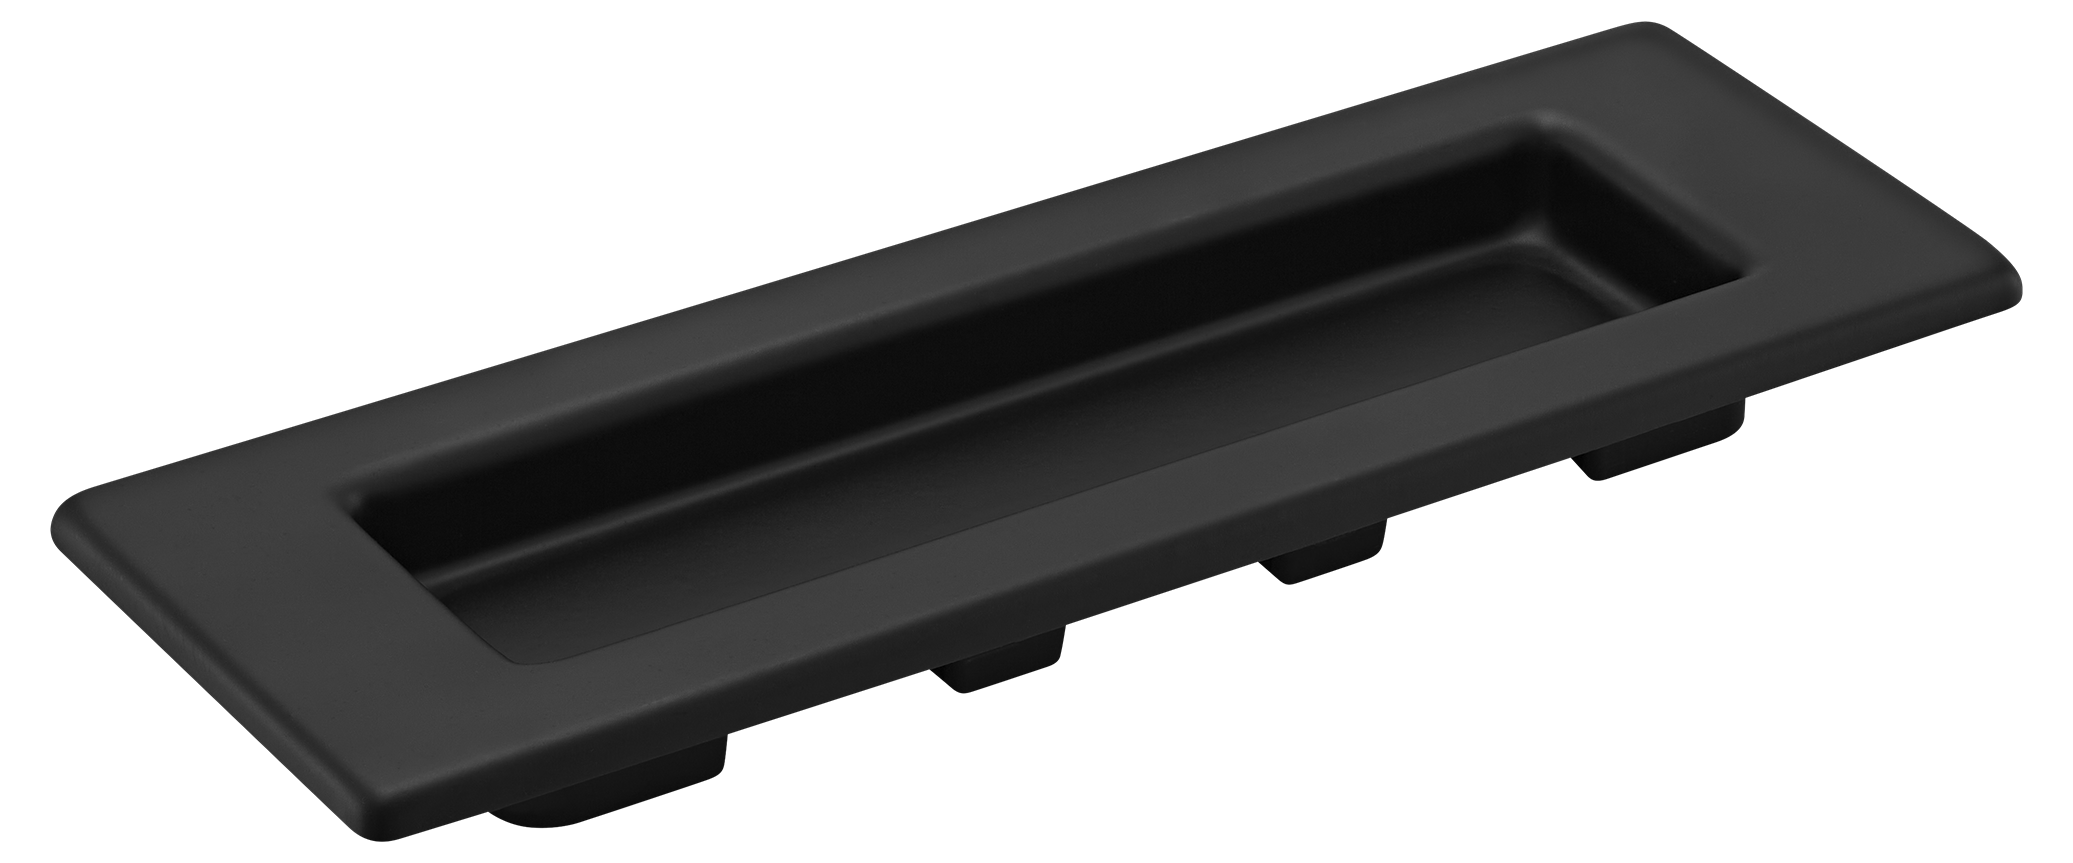 MHS153 BL, ручка для раздвижных дверей, цвет - черный фото купить Ижевск